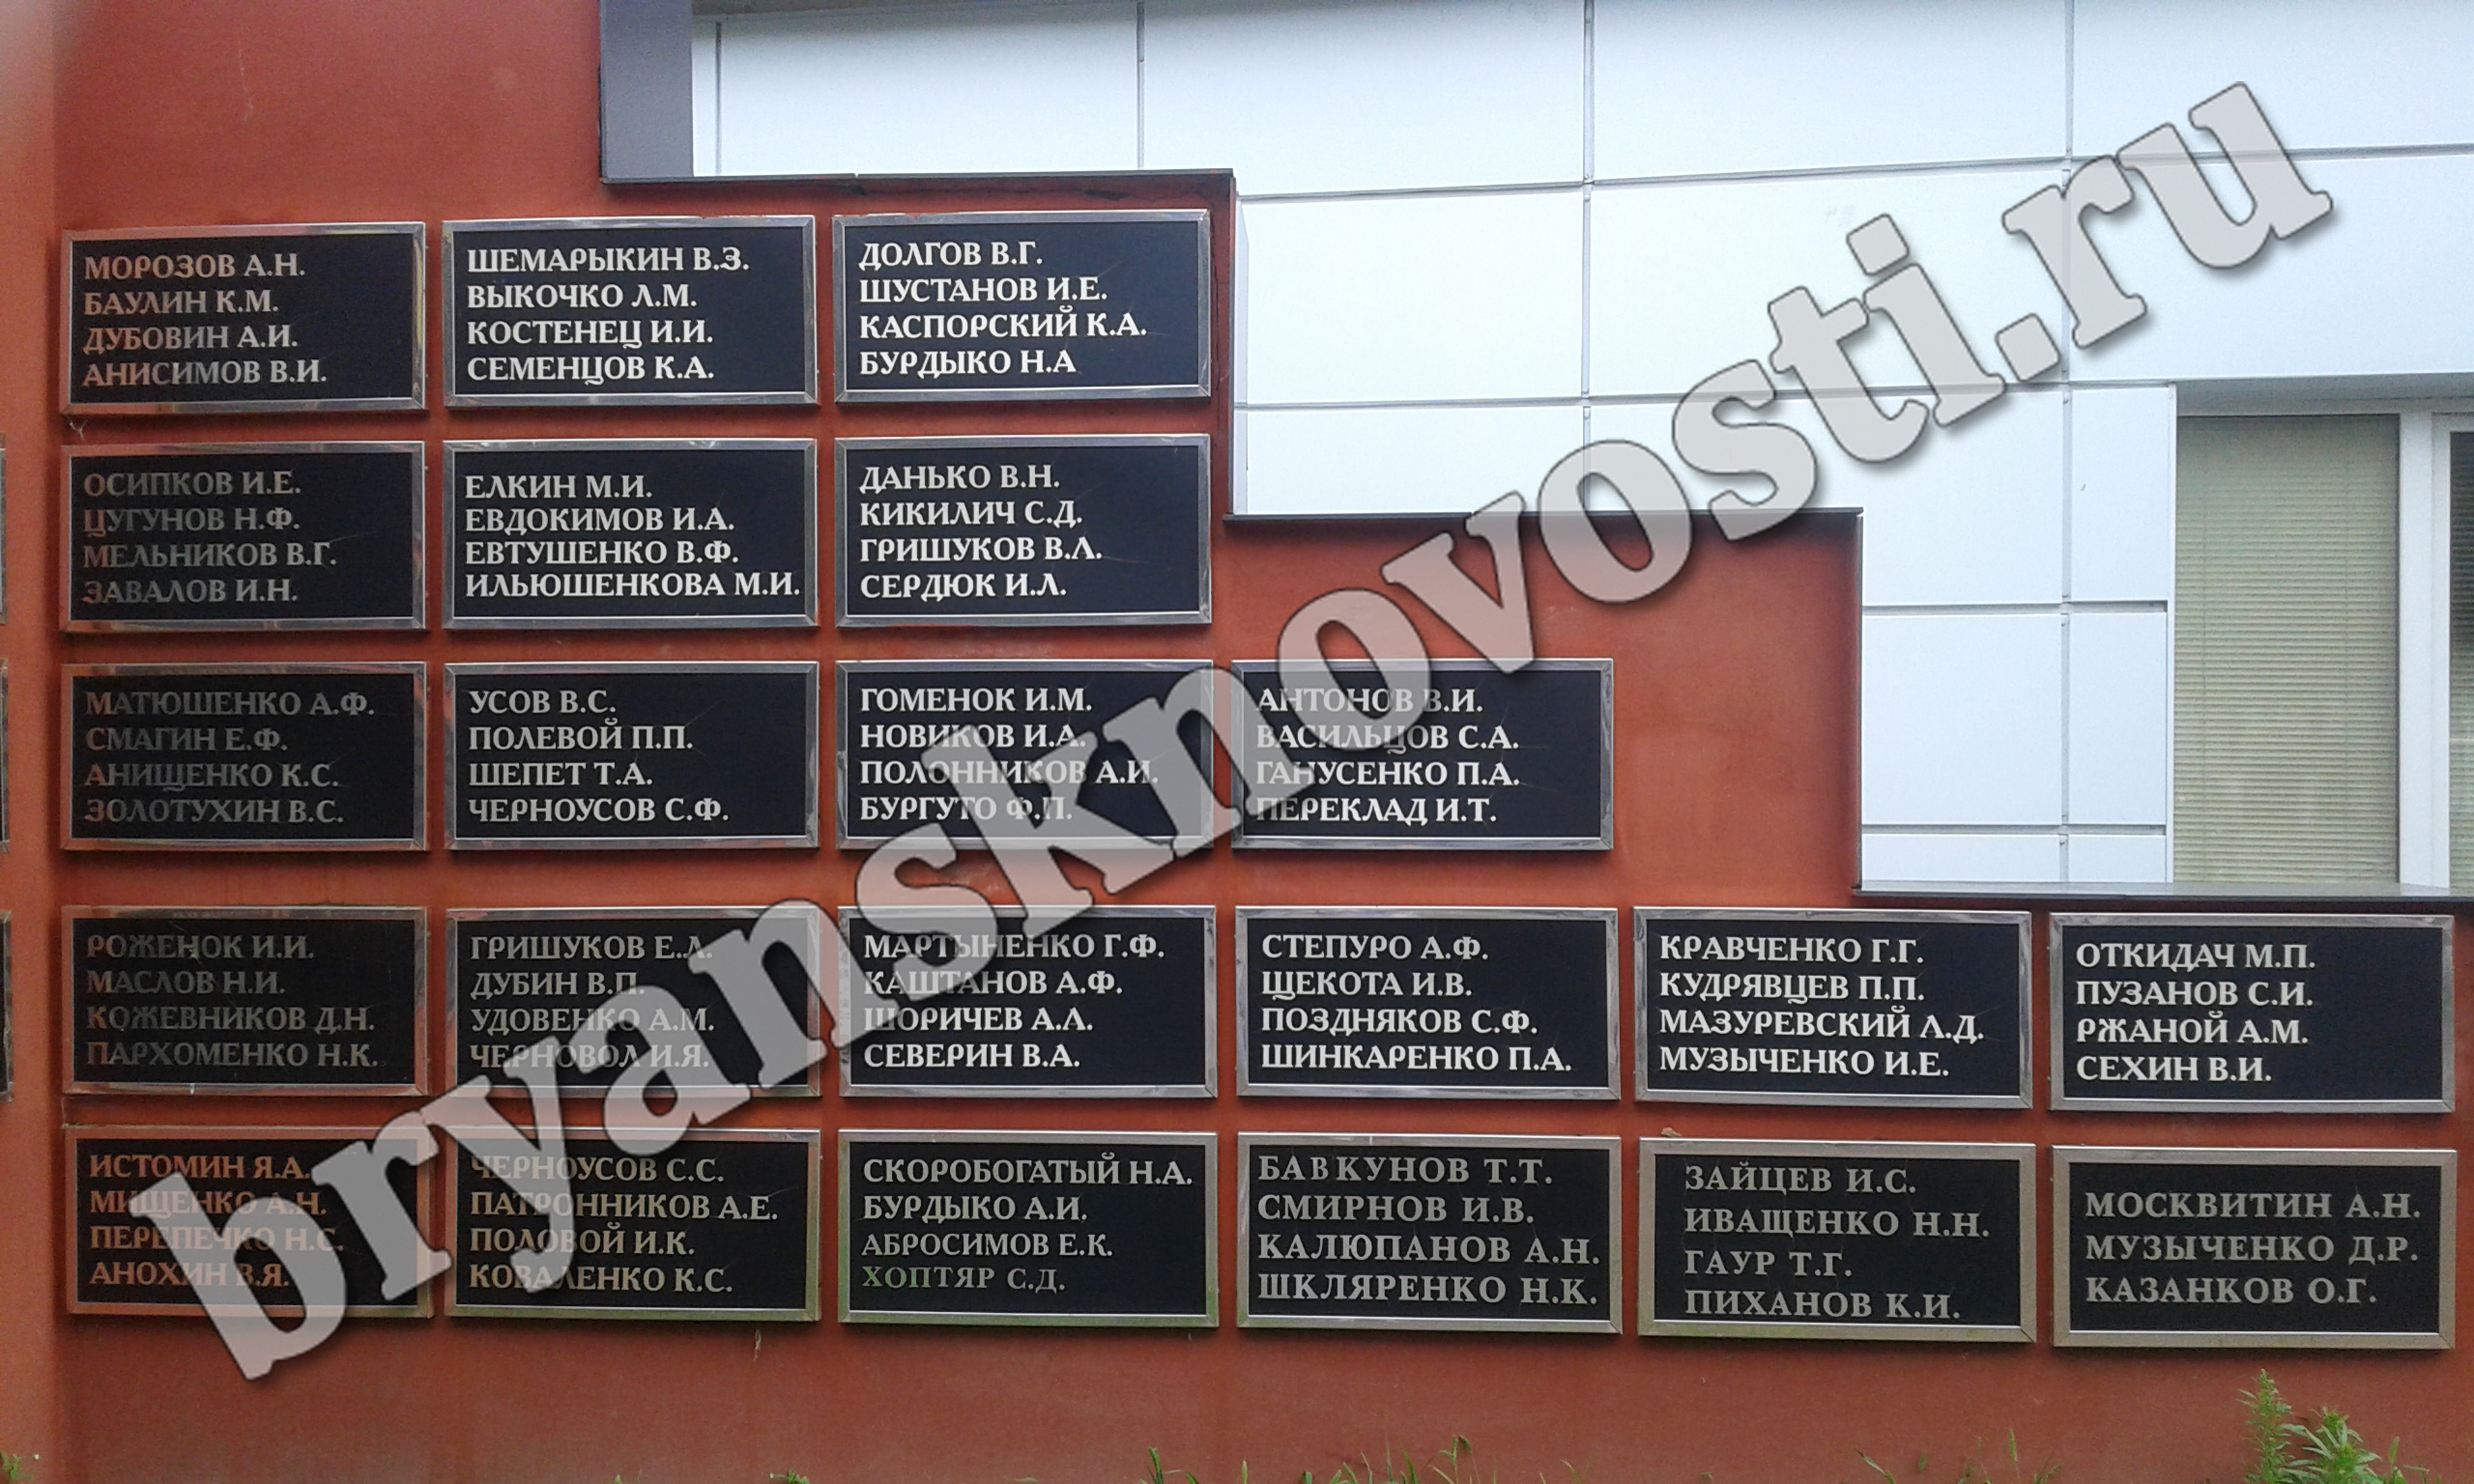 Имя участника Великой Отечественной войны увековечат на Аллее Славы в Новозыбкове